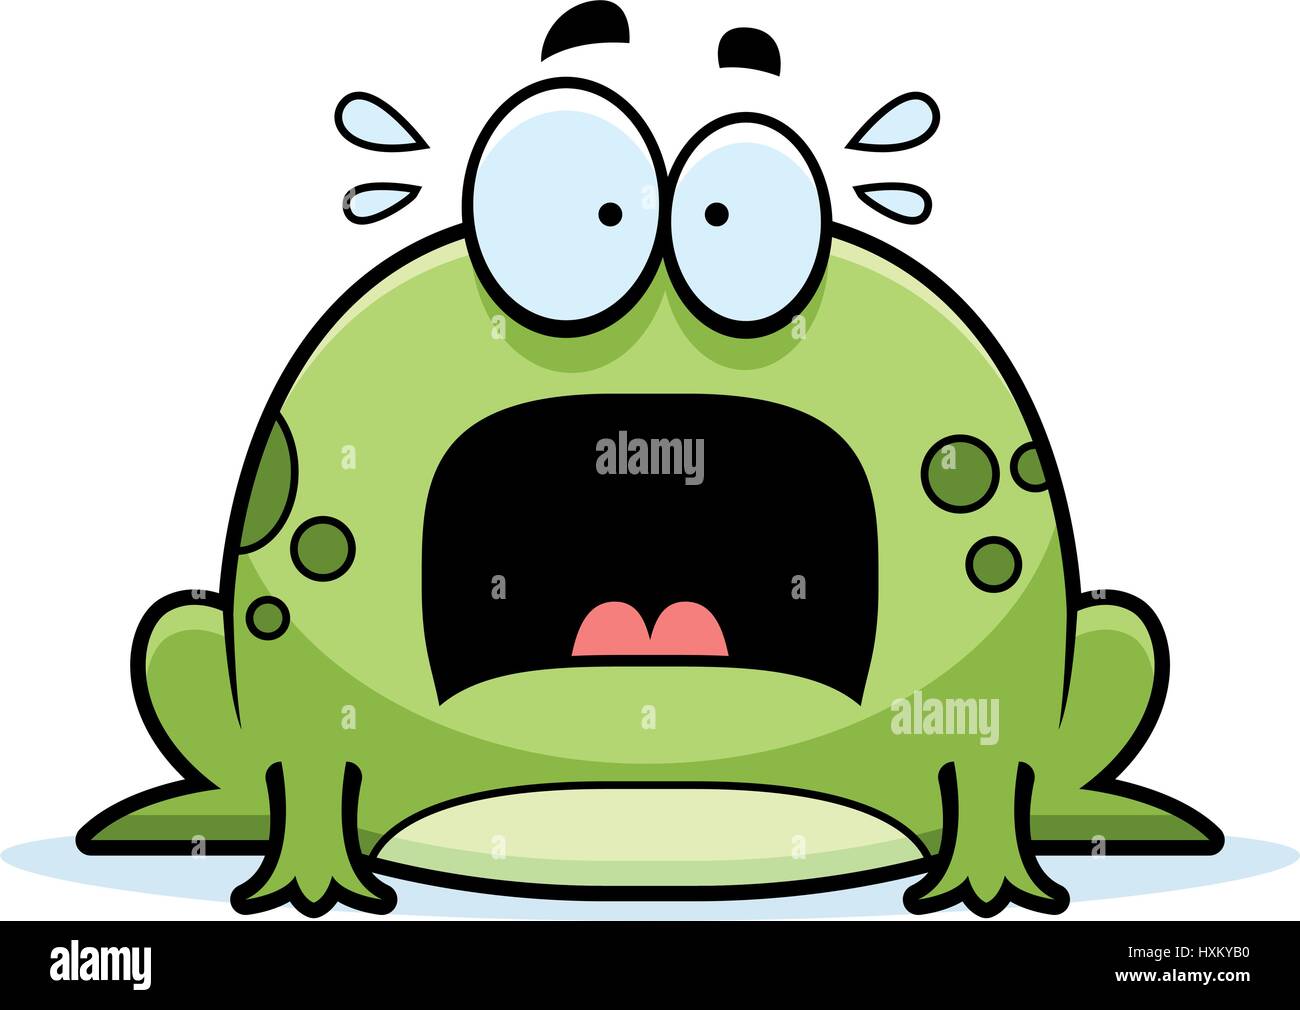 Angst, eine Cartoon-Illustration eines Frosches auf der Suche. Stock Vektor